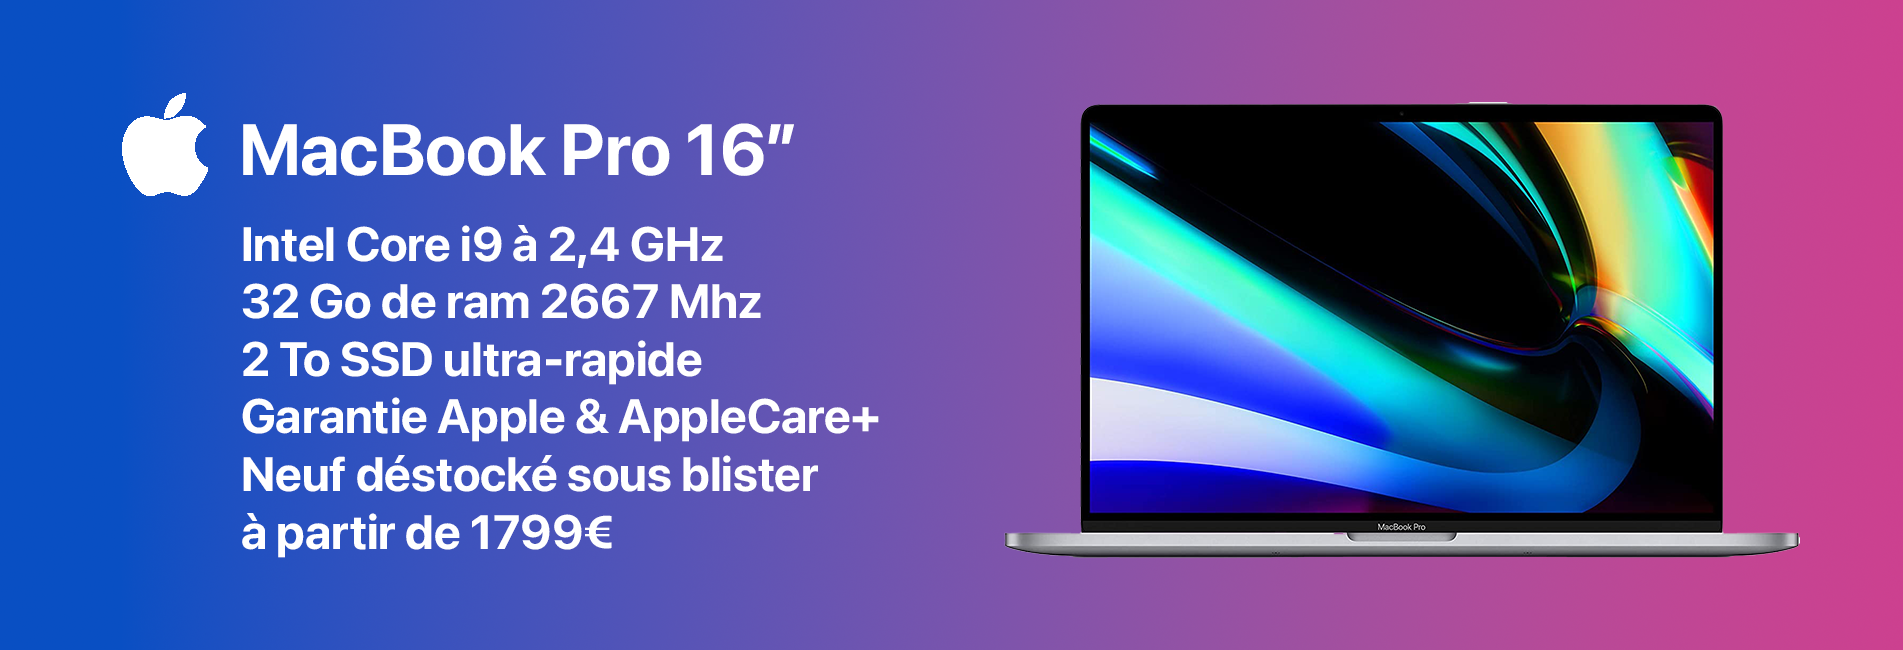 iPowerMac Pro - Le spécialiste du Mac reconditionné & neuf déstocké pour  les Pro - MacBook Pro M2 Max, iMac Pro, Mac Pro 2019